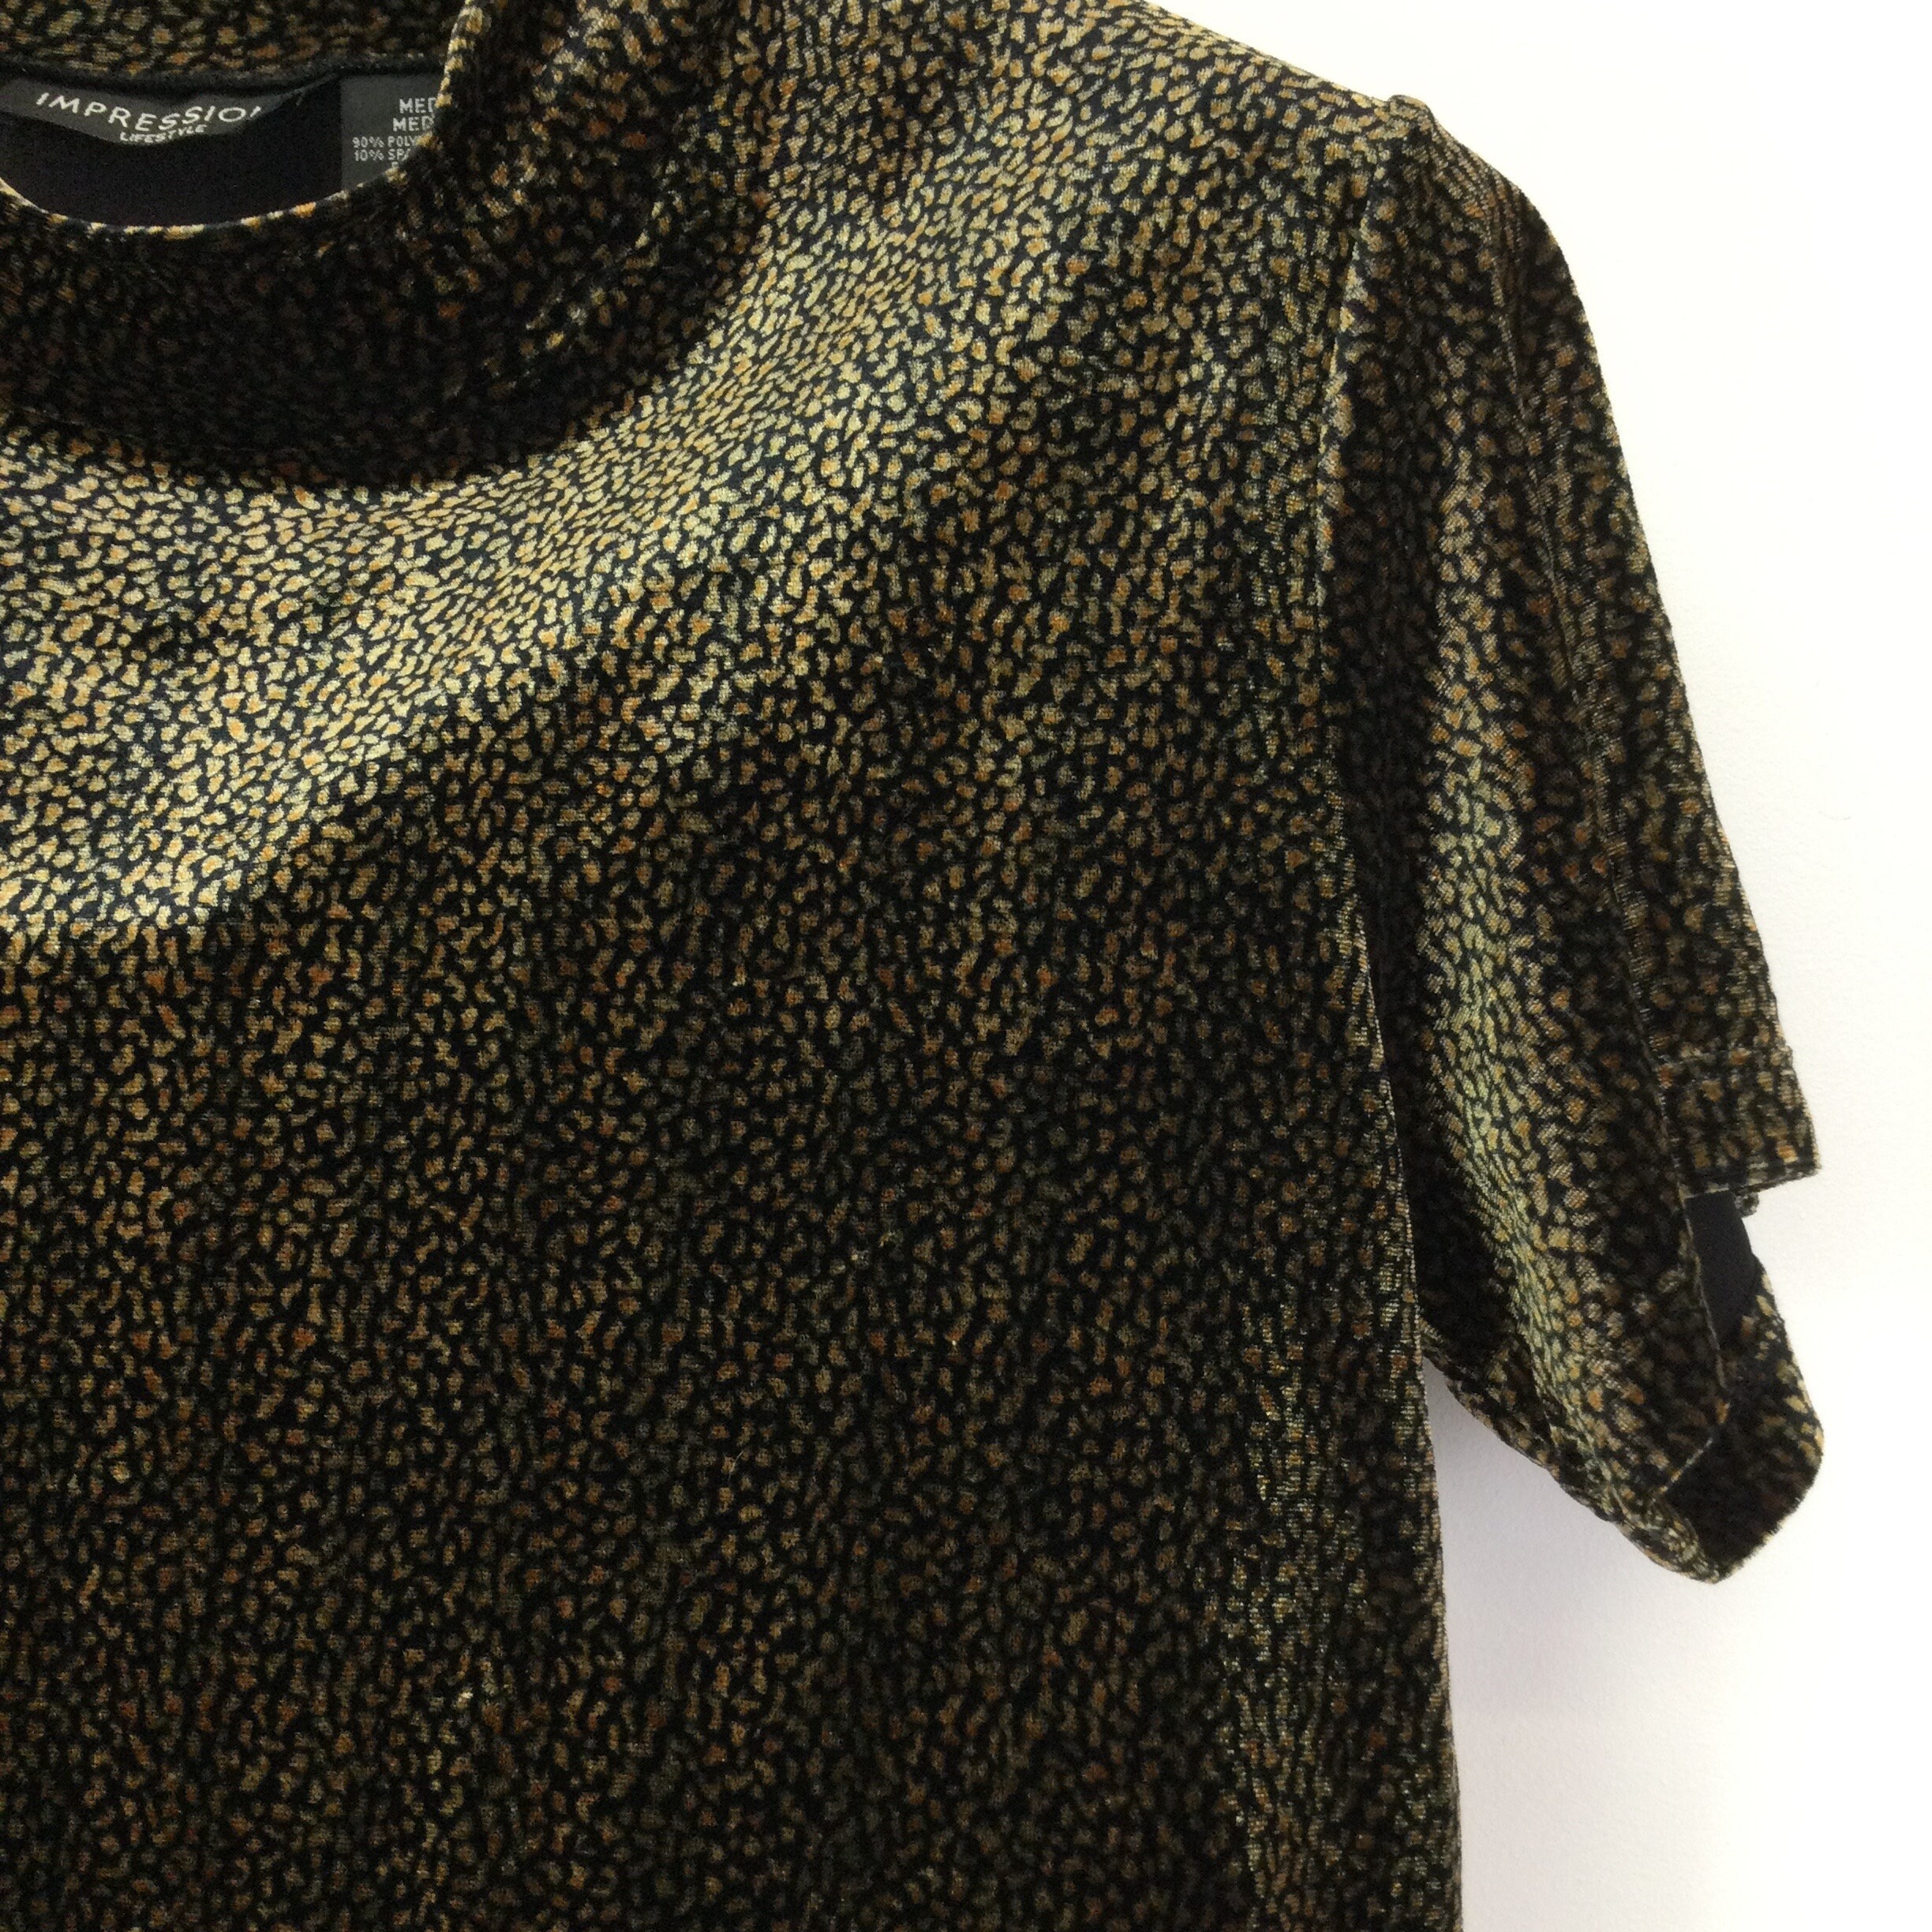 Vintage 1990s Brown Leopard Print Turtleneck T-Shirt | Etsy